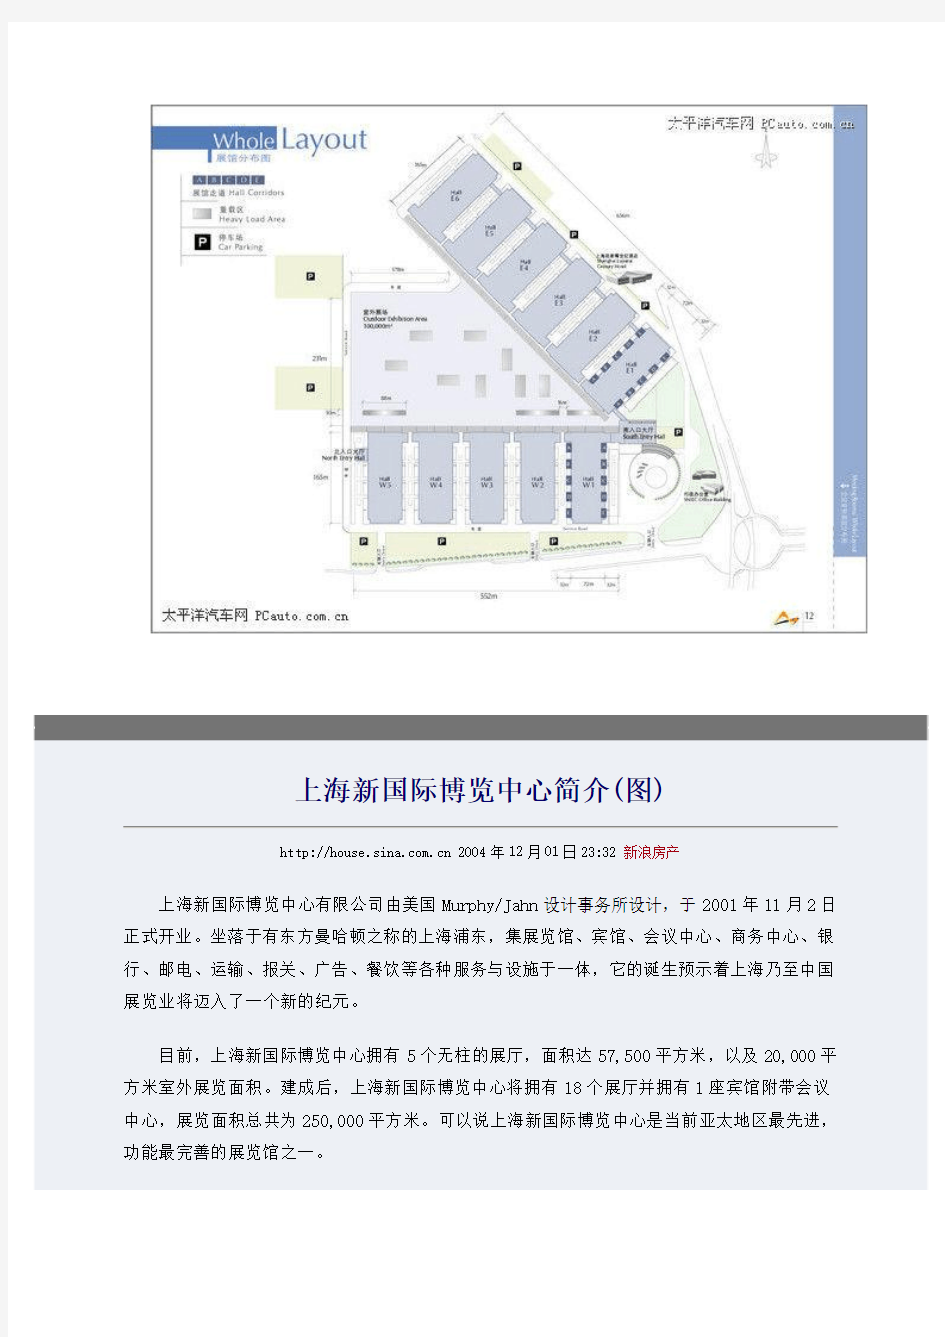 上海新国际博览中心简介及其平面图